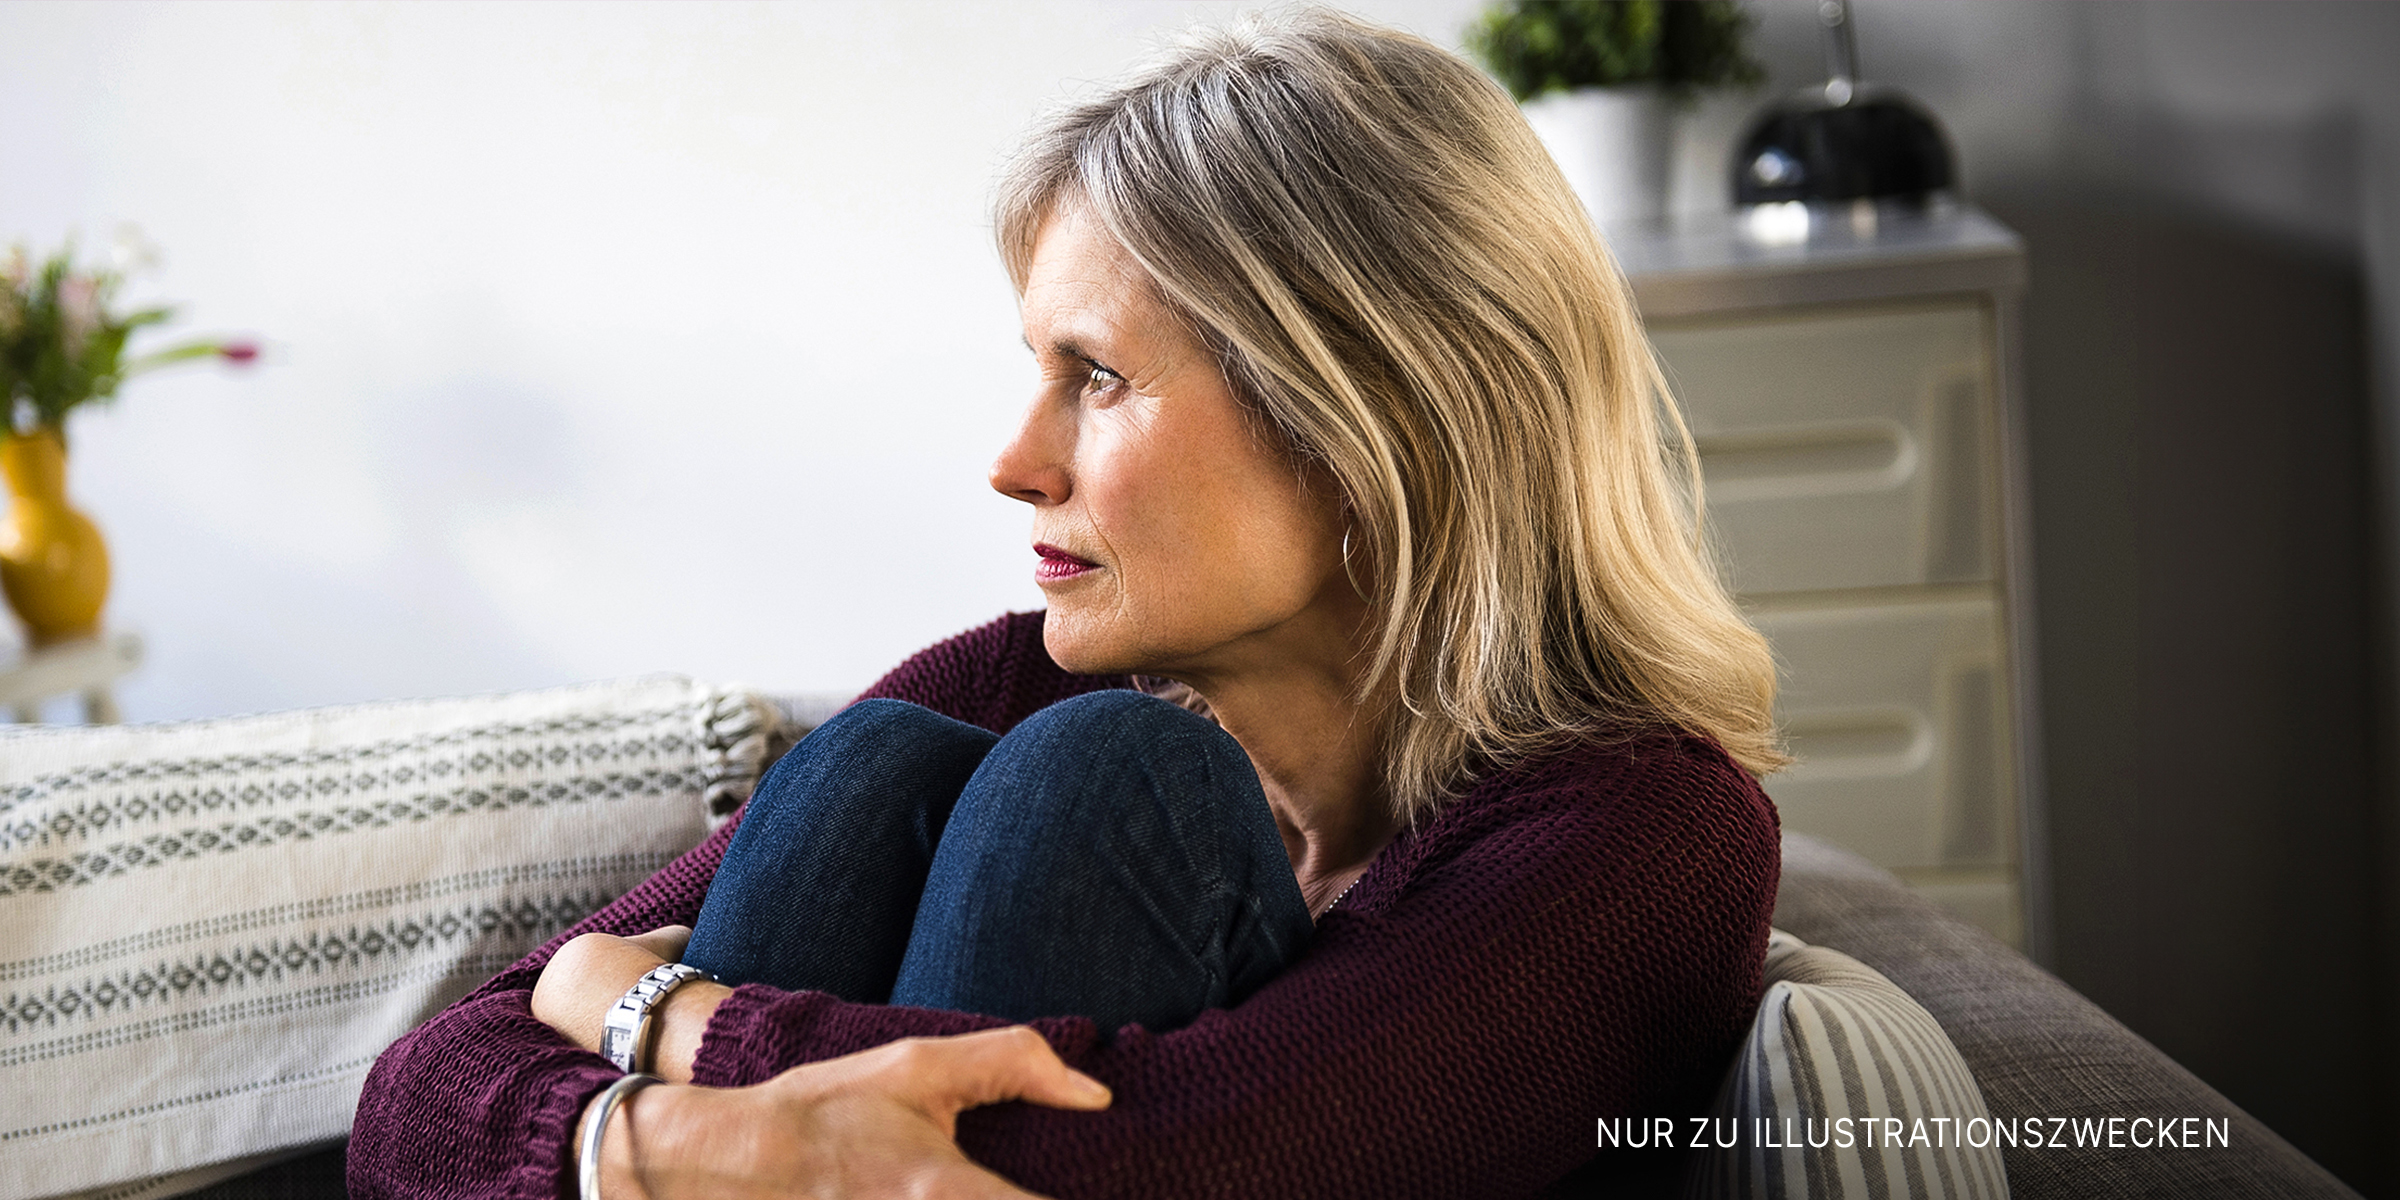 Eine Frau, die auf der Couch sitzt und traurig aussieht | Quelle: Shutterstock